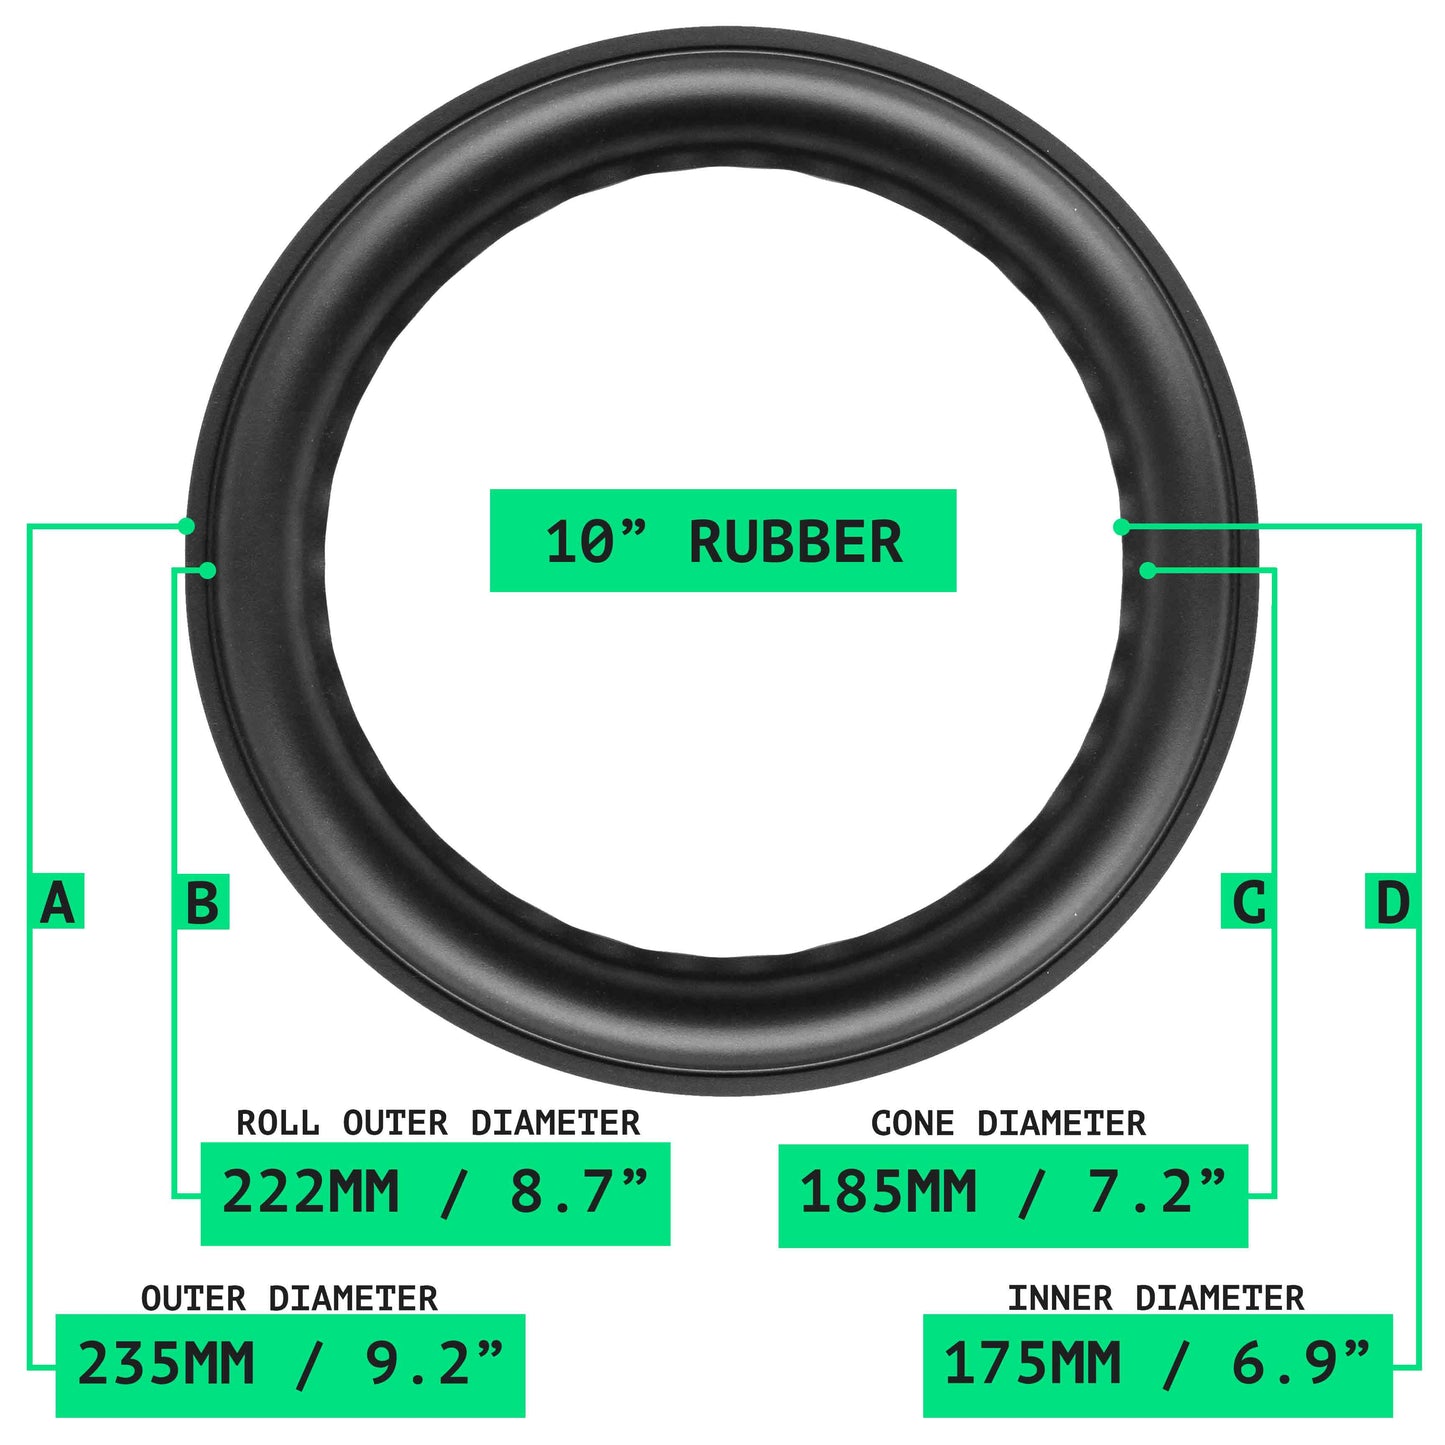 10" Rubber Repair Kit (D) - OD:235MM ID:175MM